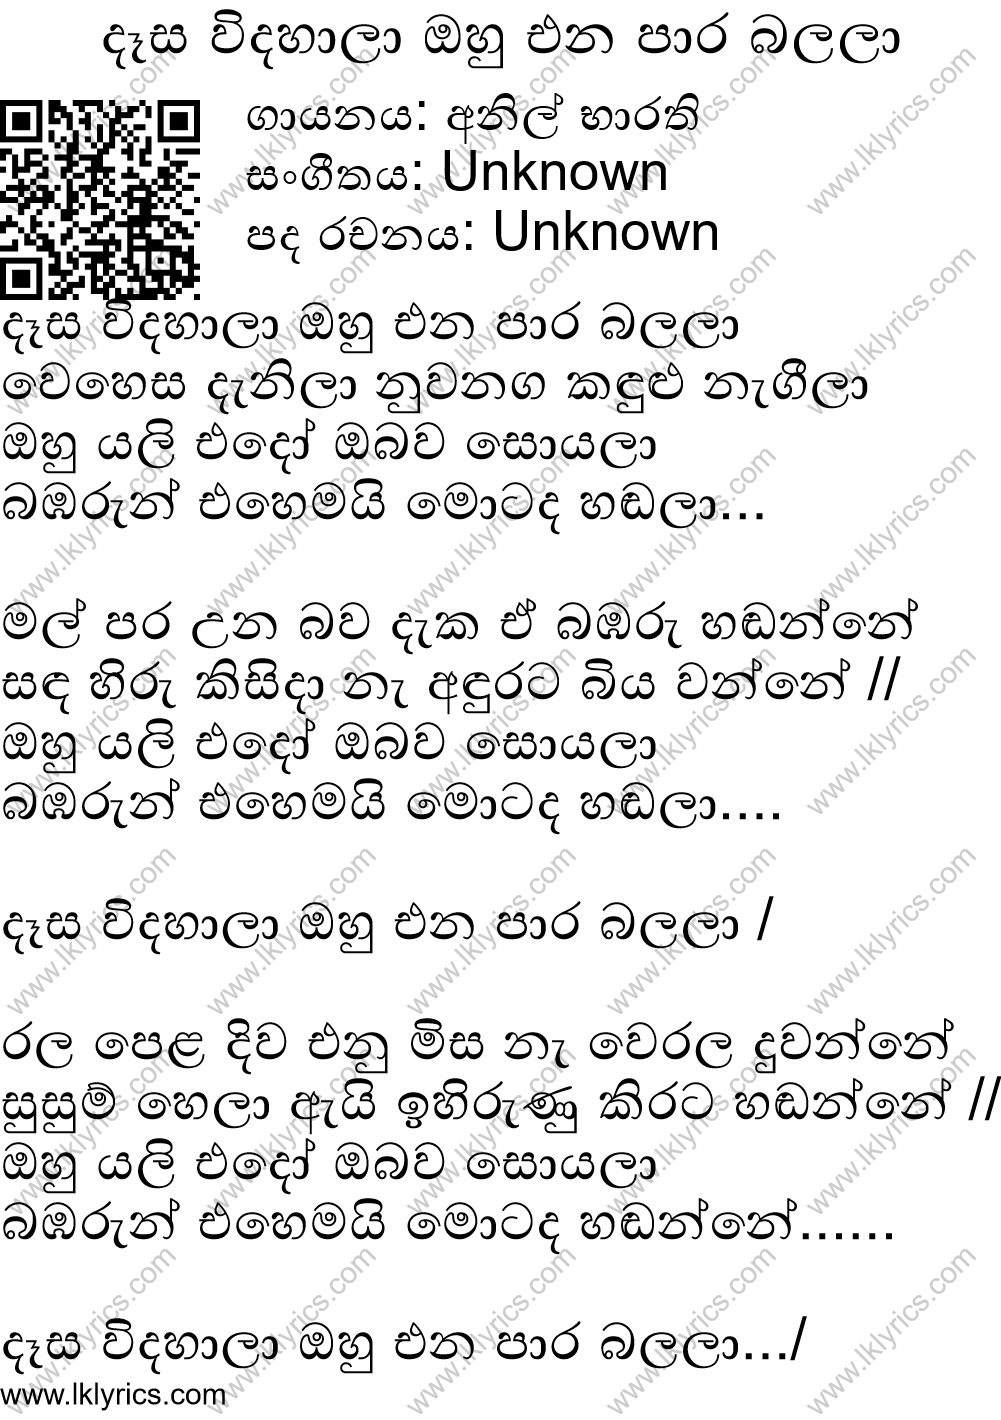 Dasa Widala Ohu Ena Paara Balala Lyrics